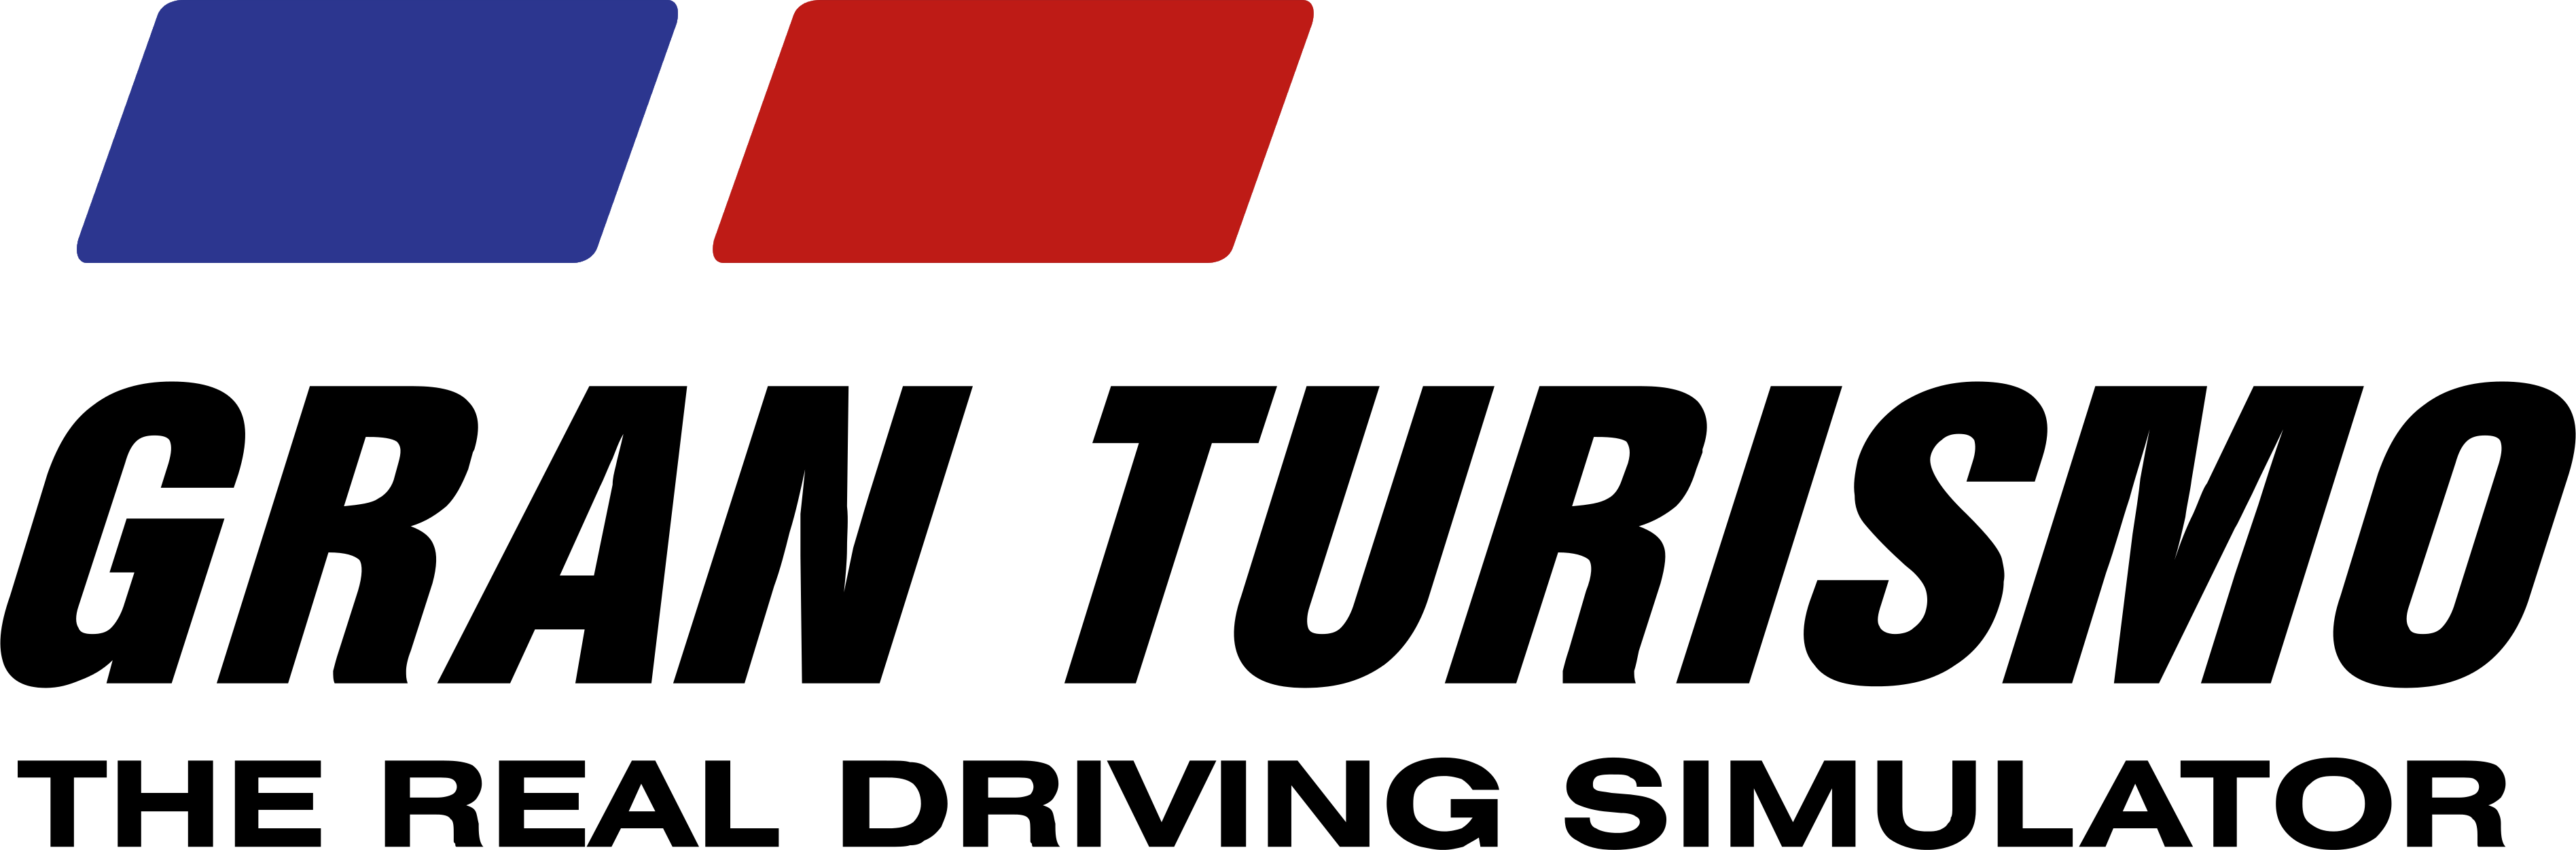 Gran Turismo Logo Image PNG Image